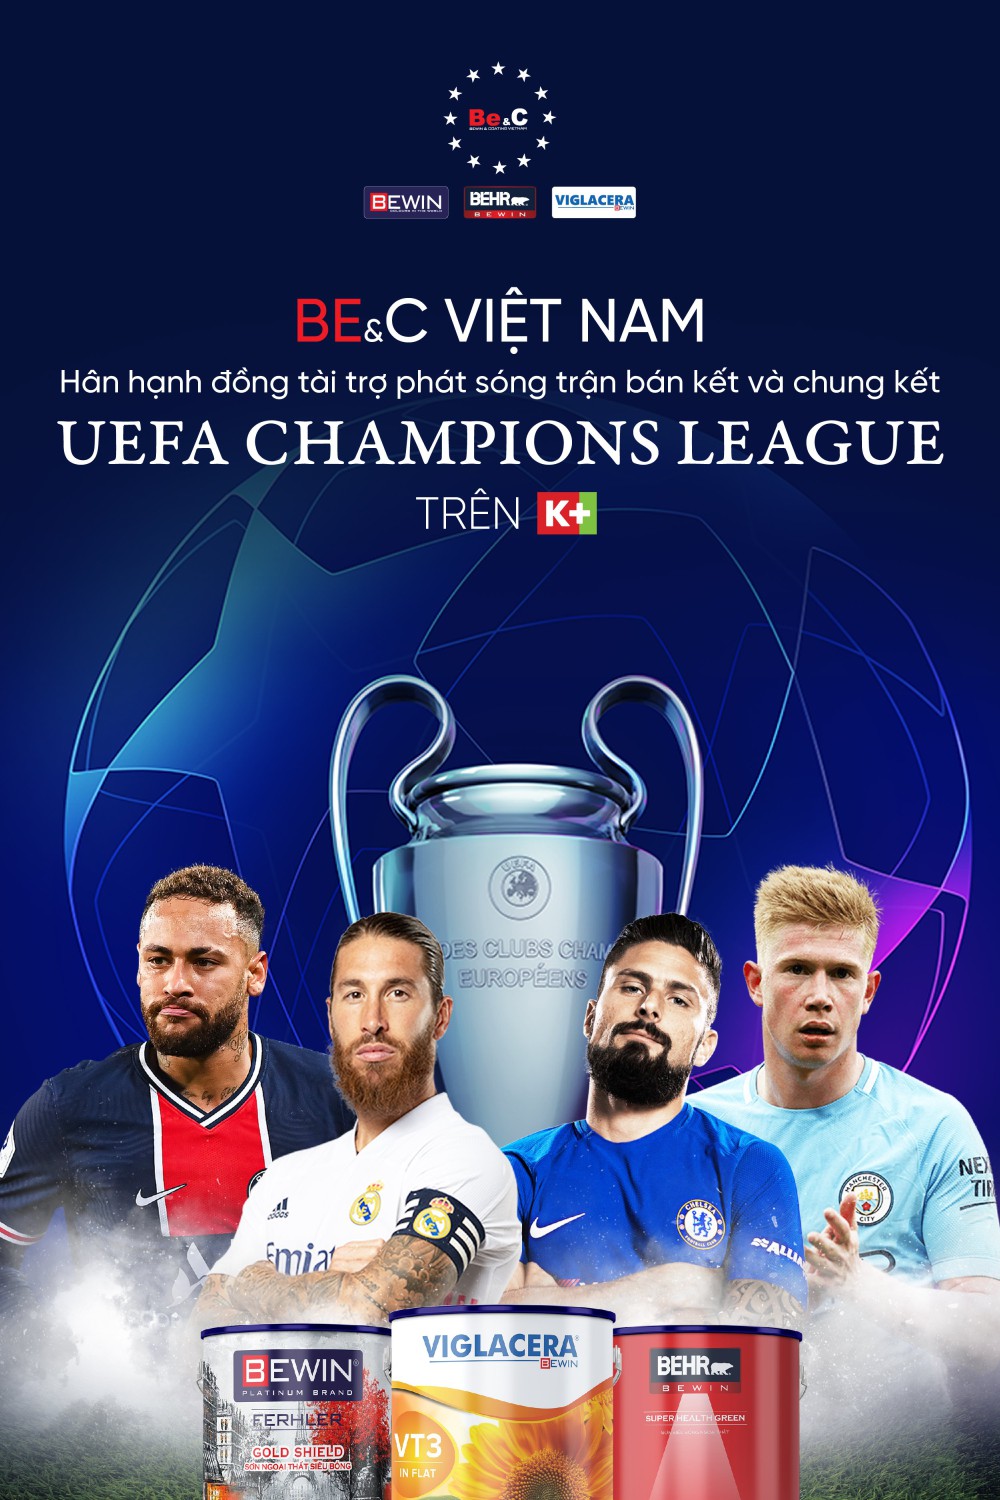 BE&C VIETNAM ĐỒNG TÀI TRỢ PHÁT SÓNG BÁN KẾT VÀ CHUNG KẾT UEFA CHAMPIONS LEAGUE TRÊN K+